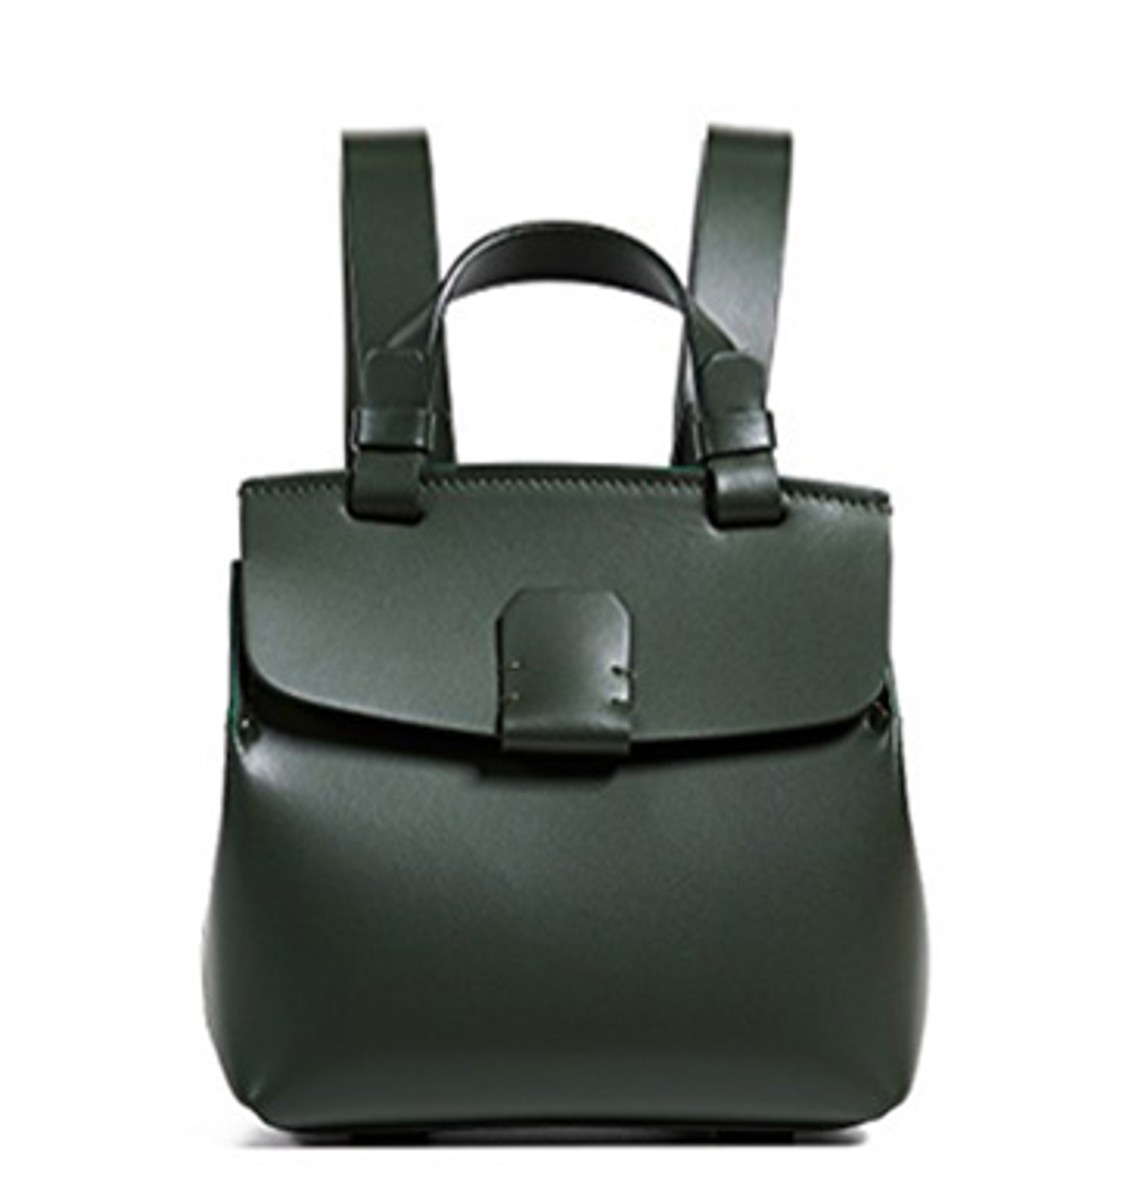 shop Nico Giani  Borse: Borsa Nico Giani, mini Hoodia backpack, in verde scuro, piccola tasca con zip interna.

Composizione: 100% pelle.
Dimensioni: 20Ax17Lx9P cm. number 1353